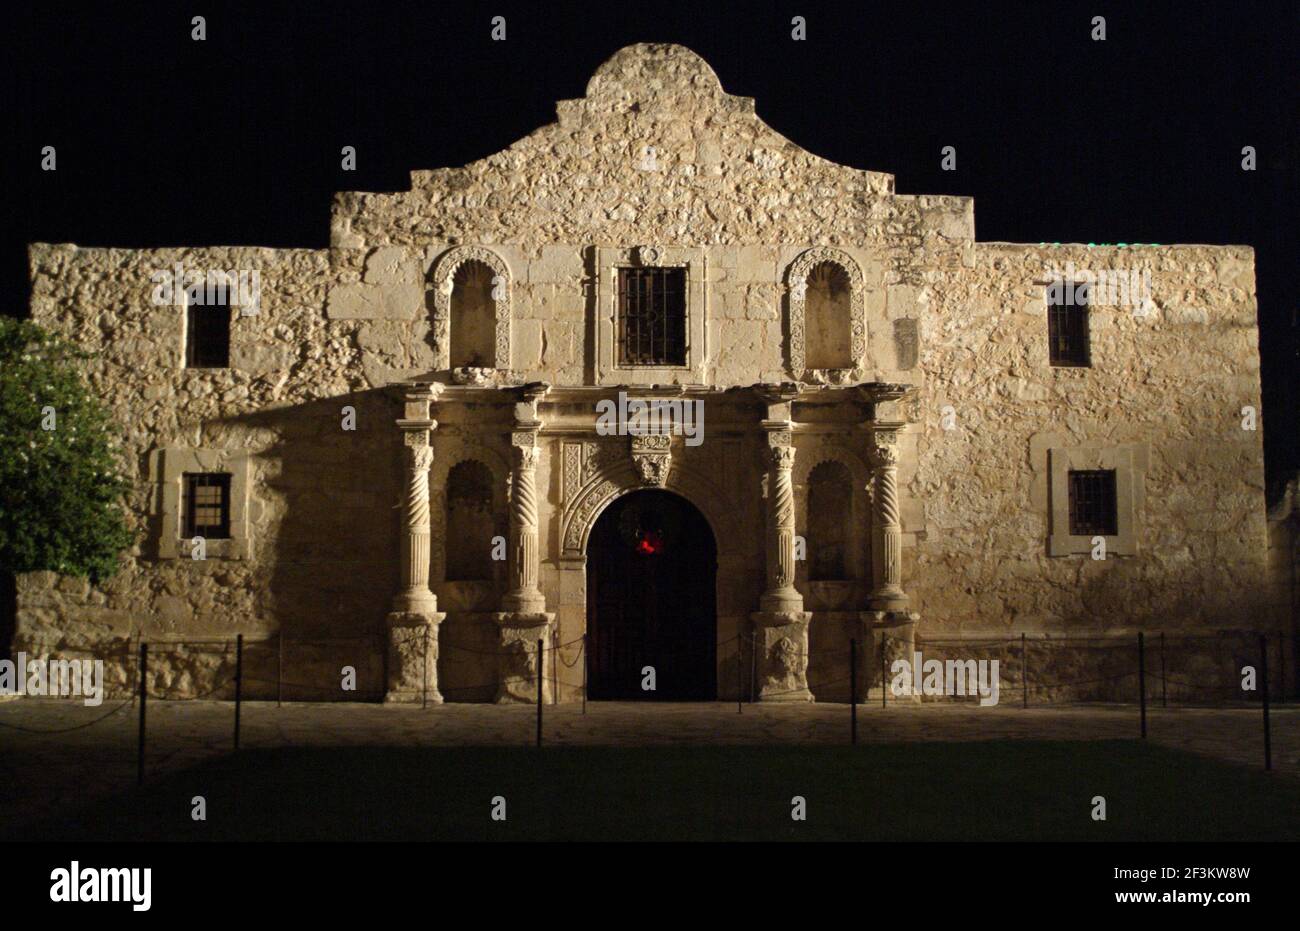 Die Alamo Mission, Schauplatz der berühmten Schlacht der Texas Revolution, Februar-März 1836, San Antonio, Texas, USA Stockfoto